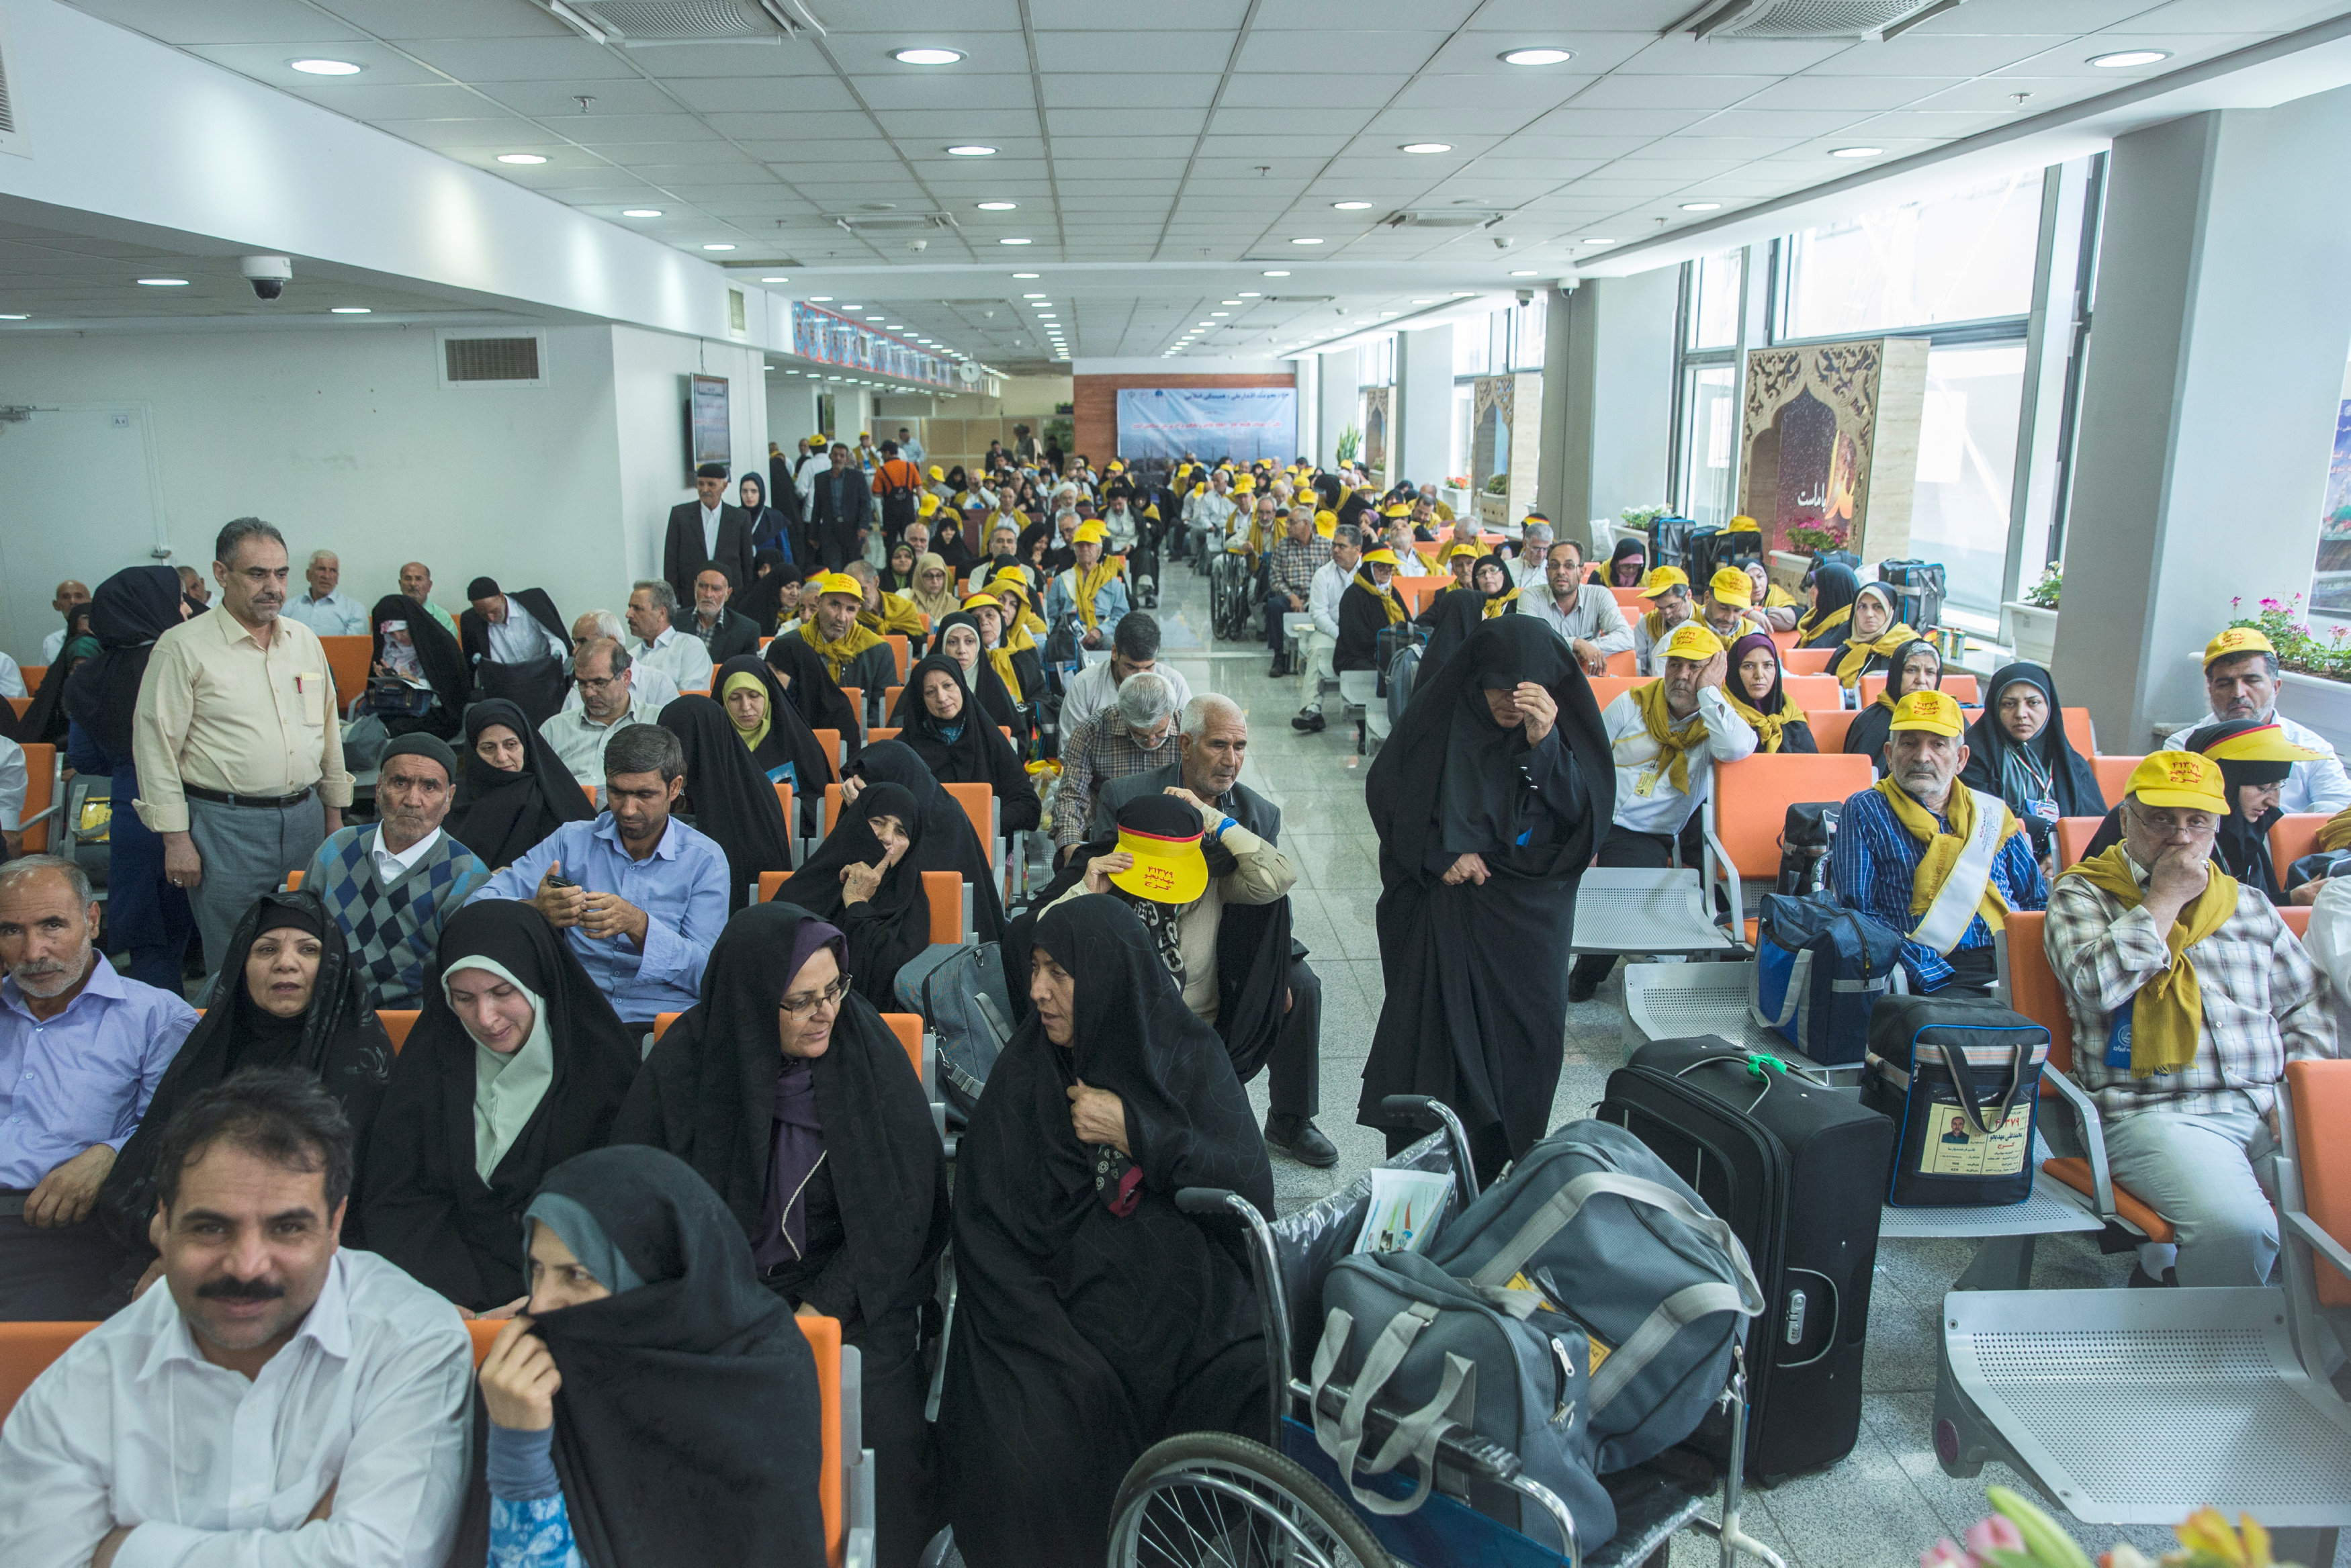 انتظار الحجاج الإيرانيين فى المطار للسفر إلى السعودية